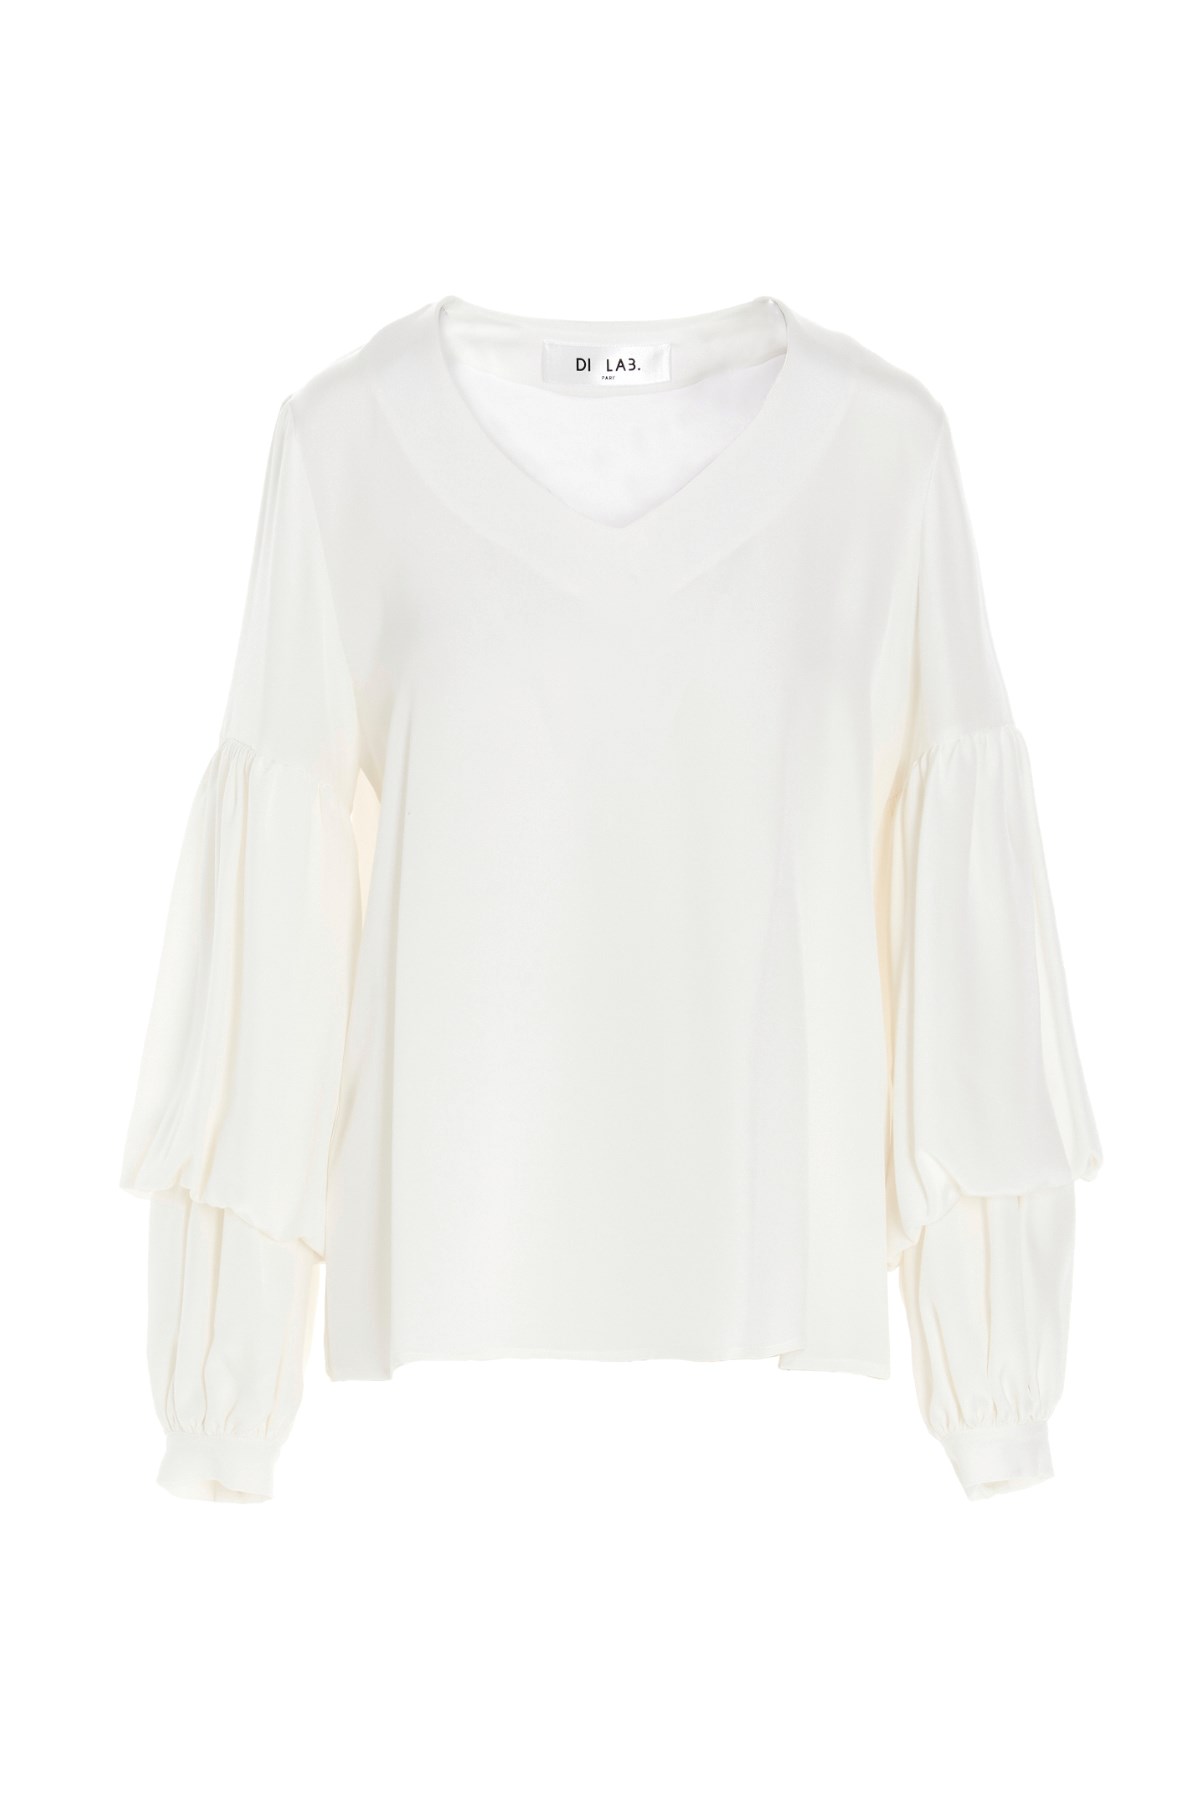 DI.LA3 PARI' Puff-Sleeve Silk Shirt